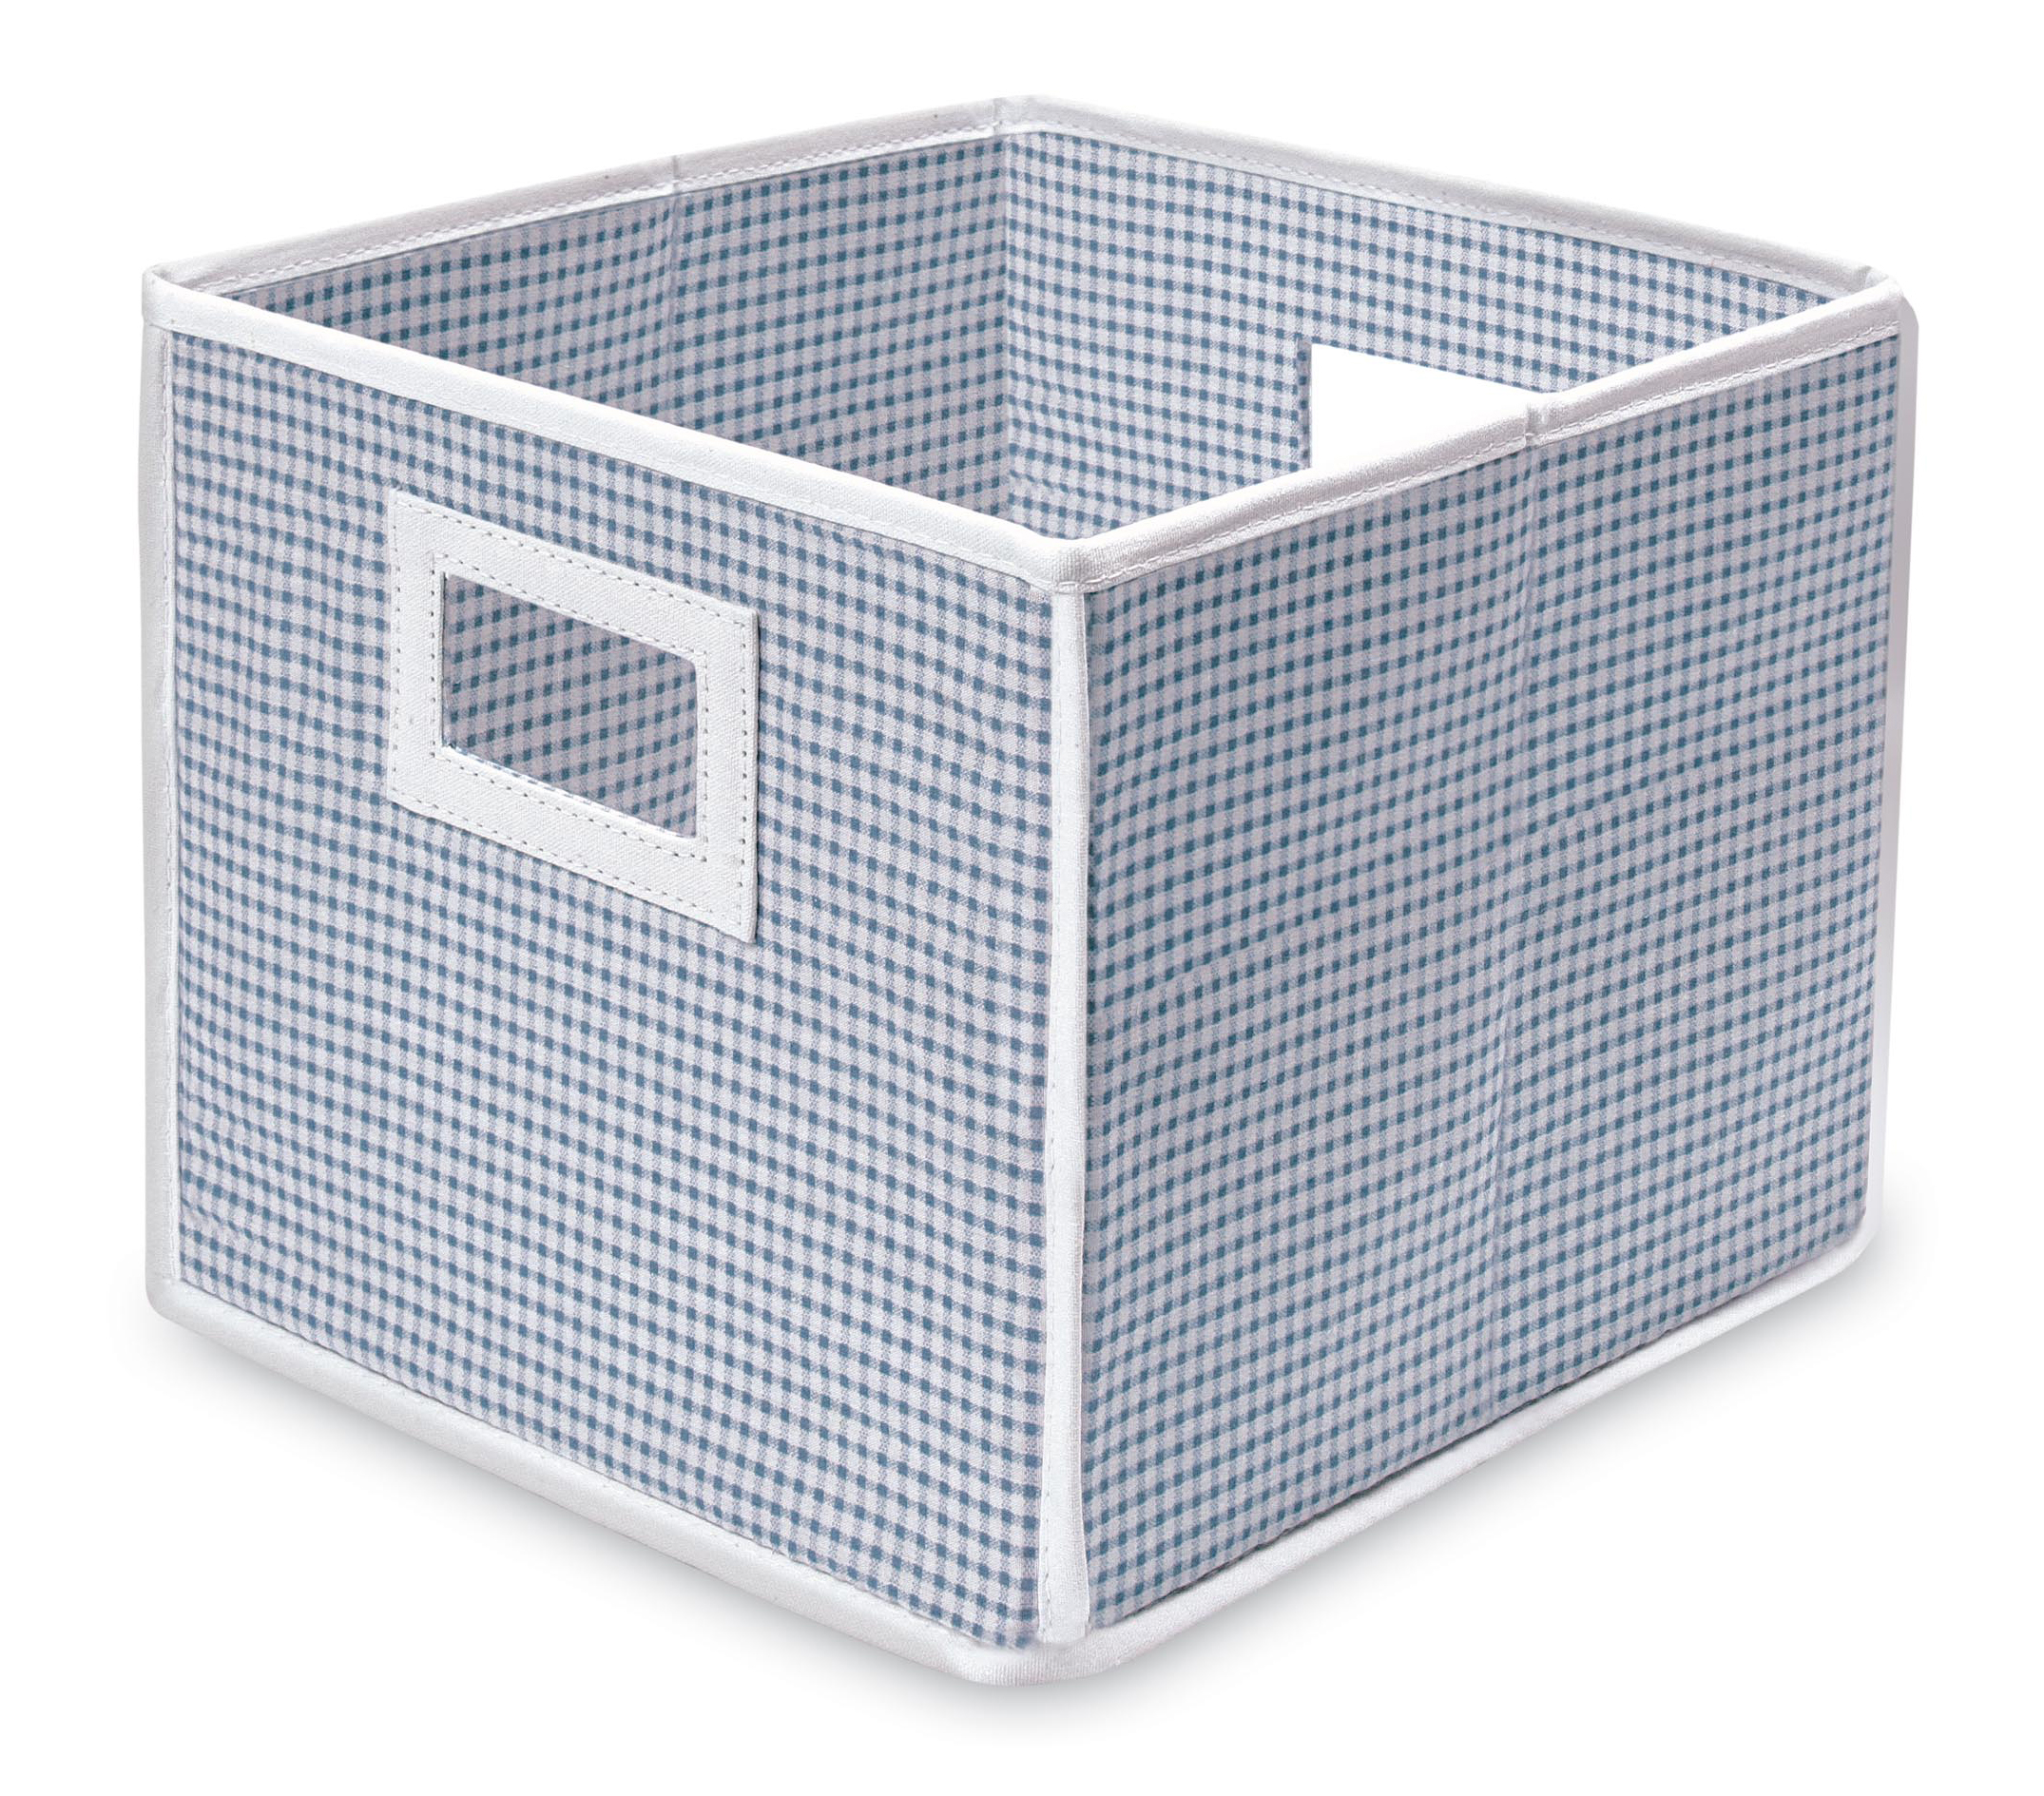 Folding Basket/Storage Cube - Blue Gingham